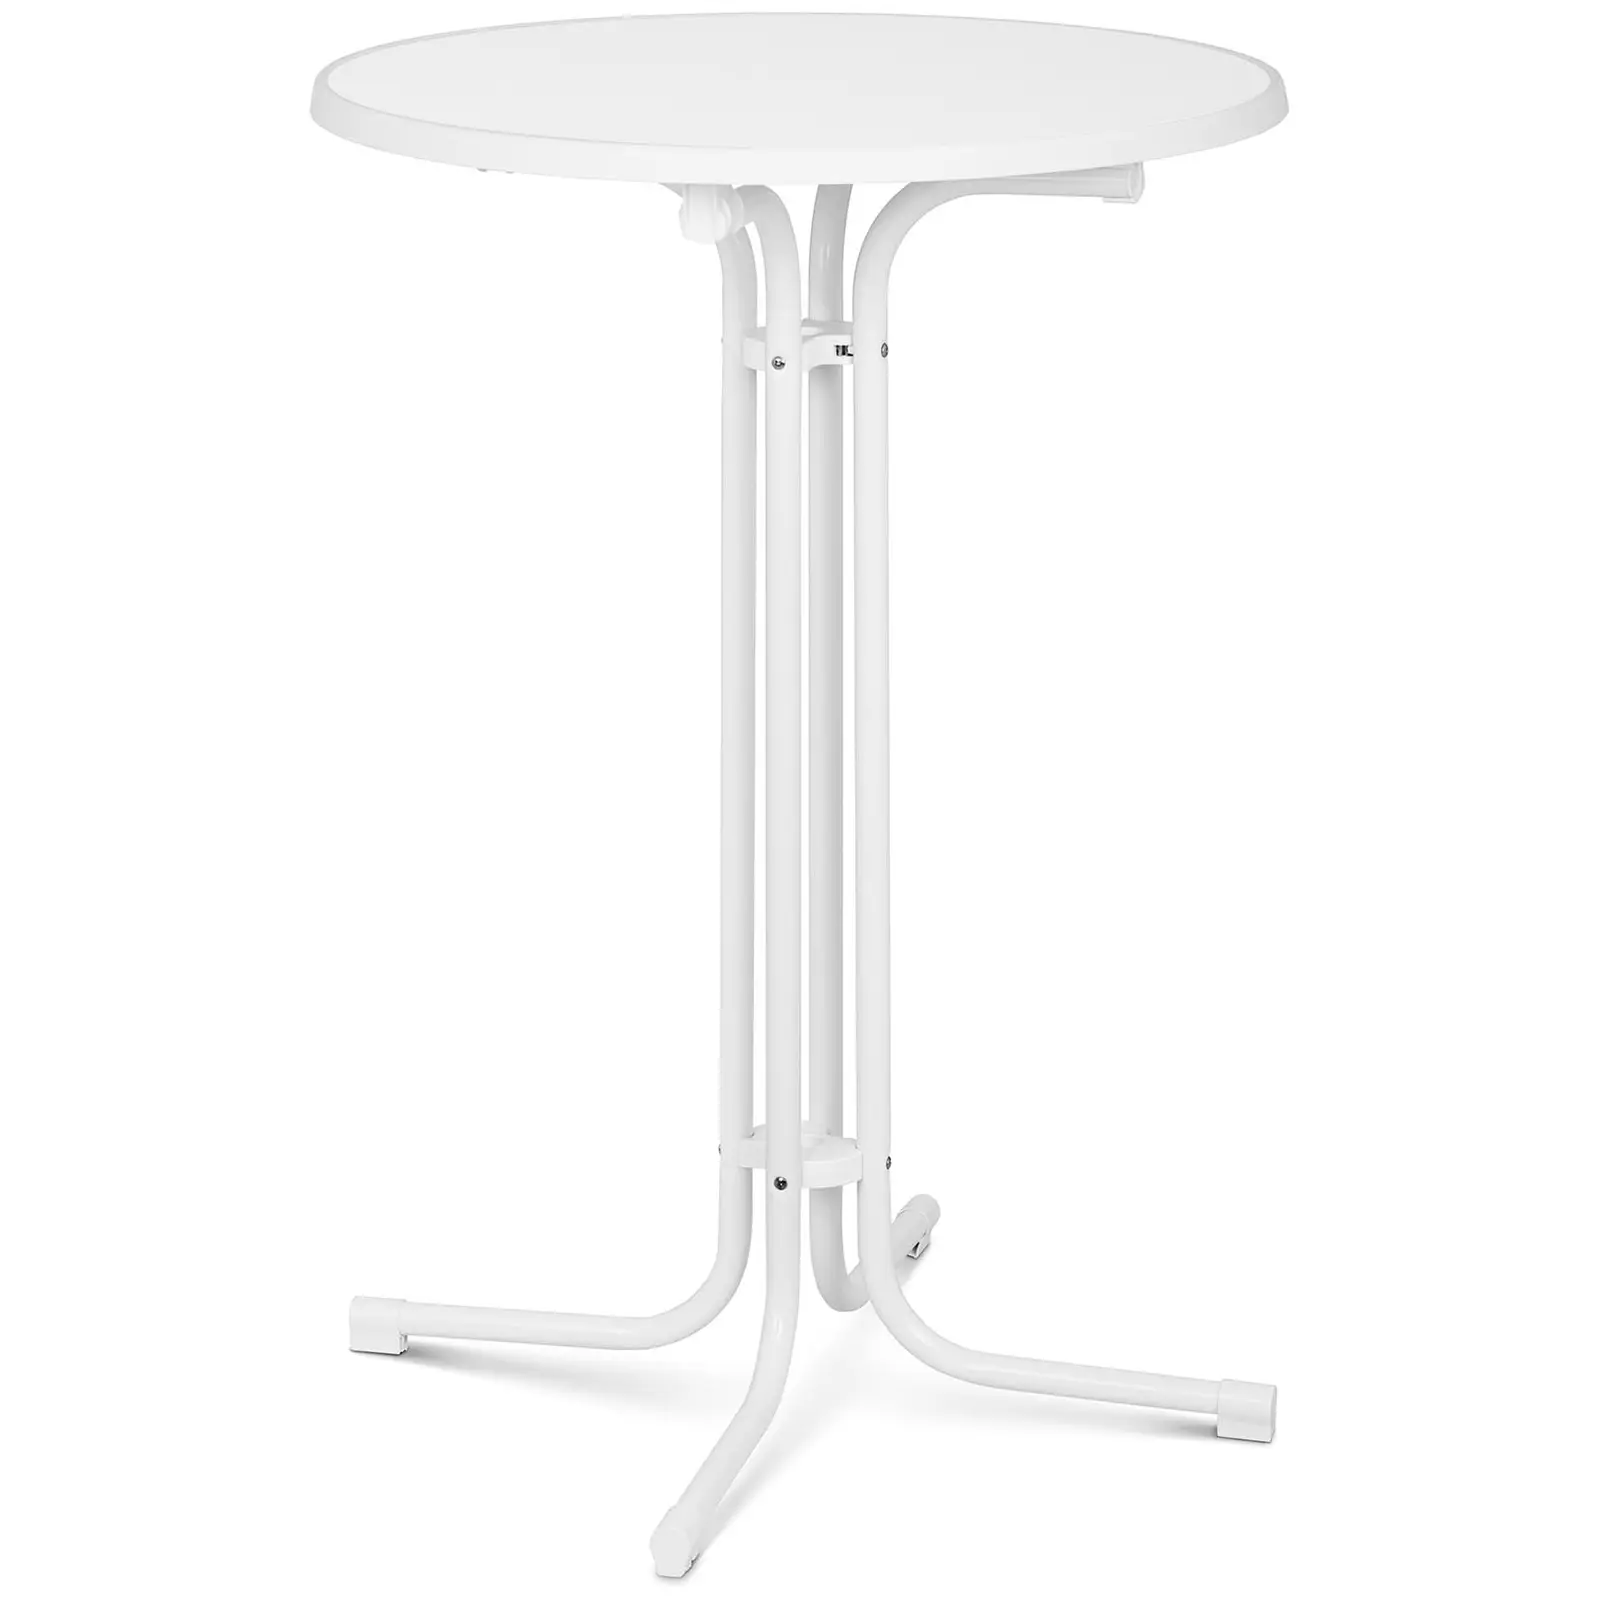 Koktejlový stůl Ø 80 cm skládací bílý - Skládací stoly Royal Catering